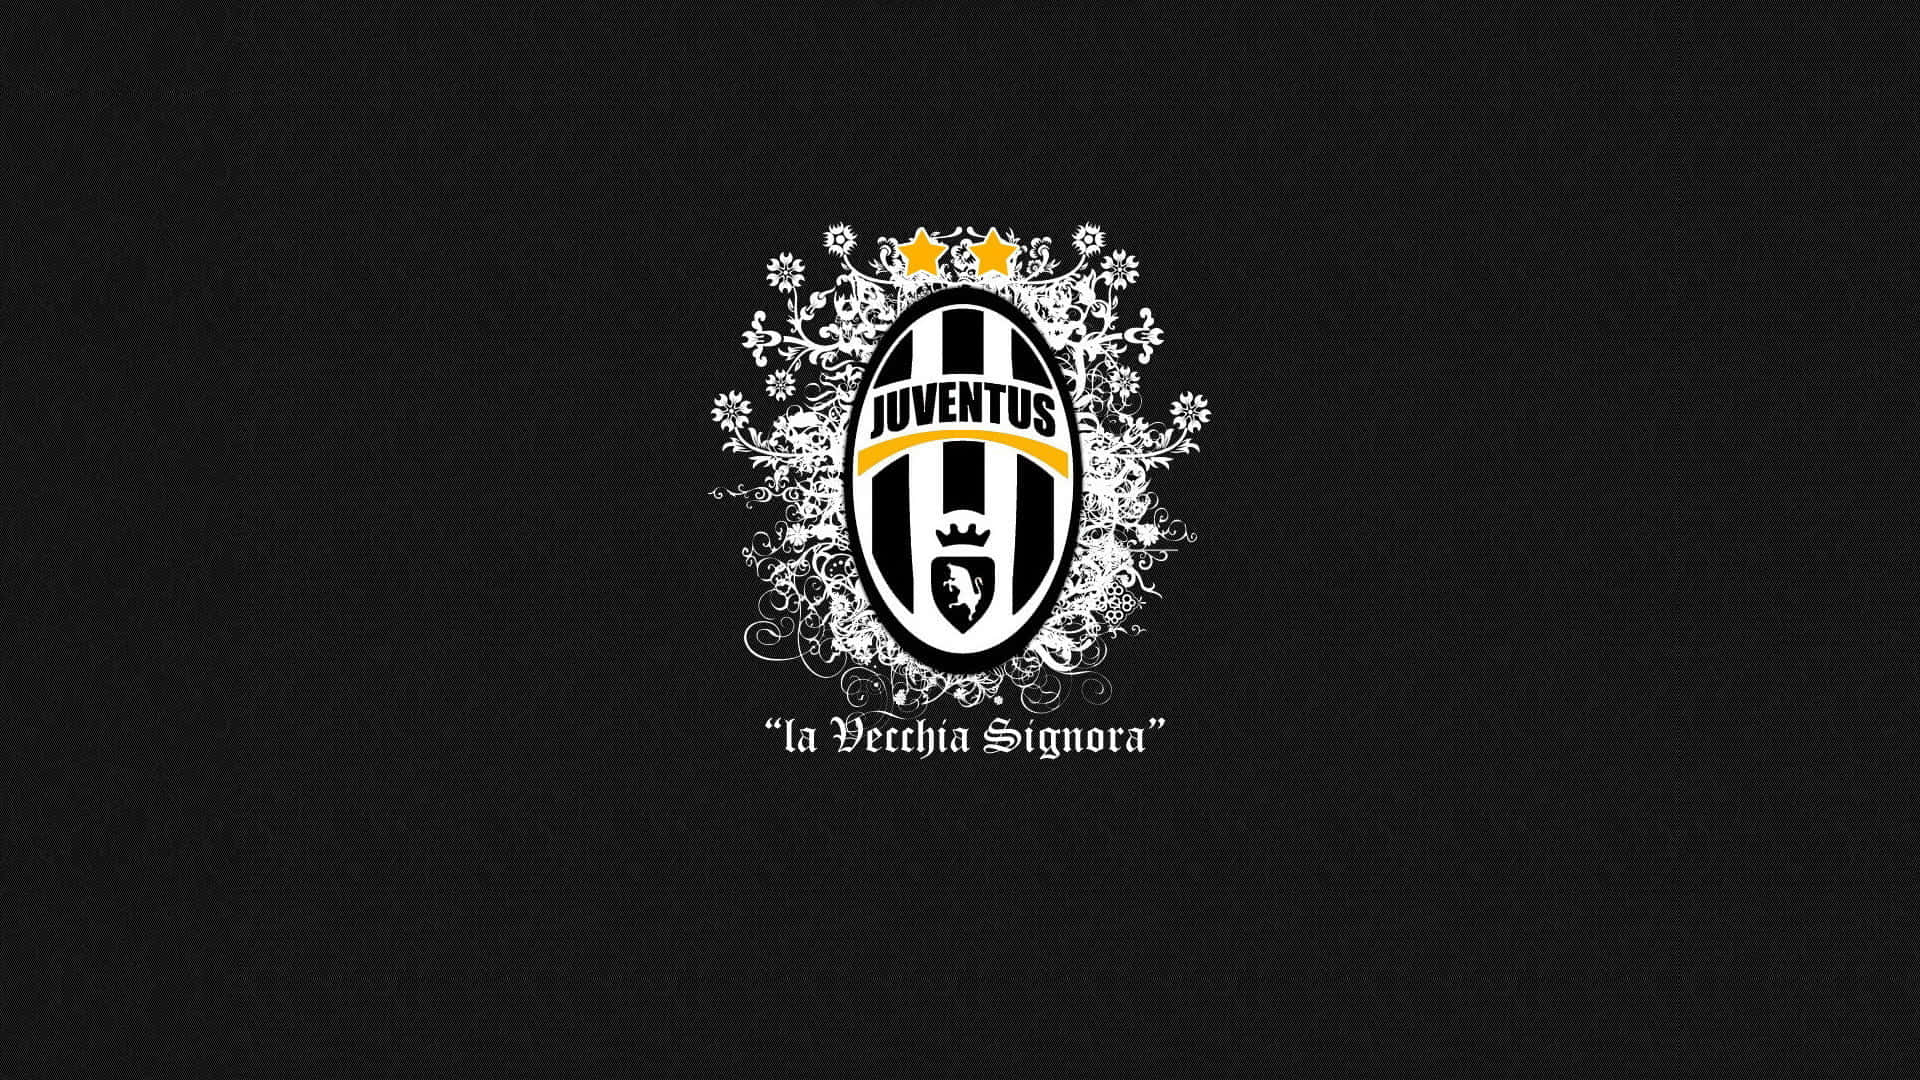 L'apicedel Successo Per L'iconica Juventus D'italia